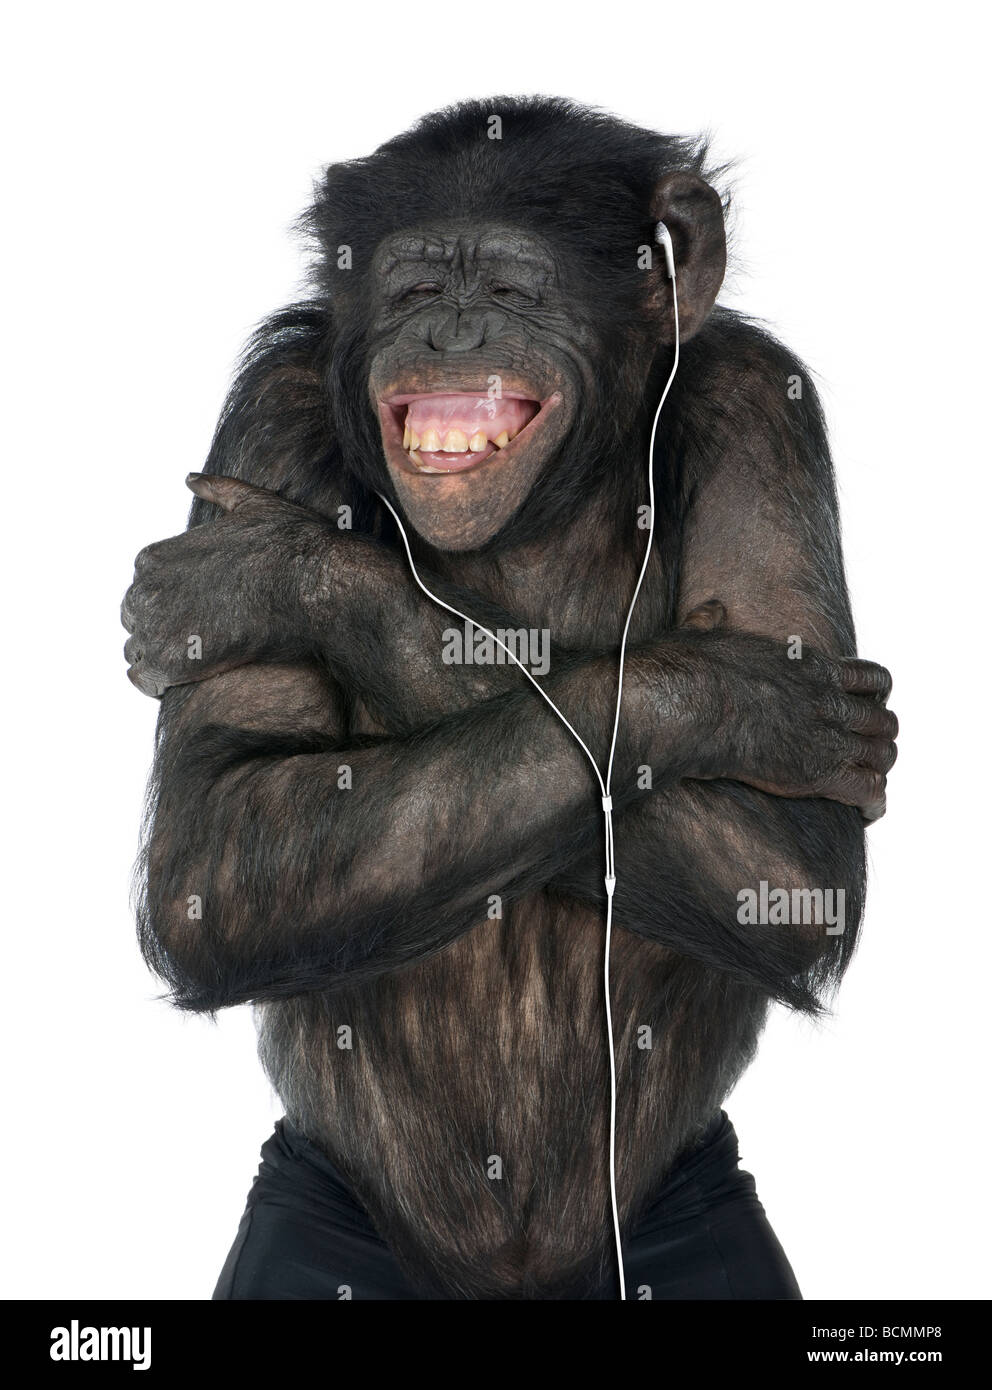 Monkey, razza mista tra scimpanzé e Bonobo, 20 anni, ascoltando la musica sulle cuffie davanti a uno sfondo bianco Foto Stock